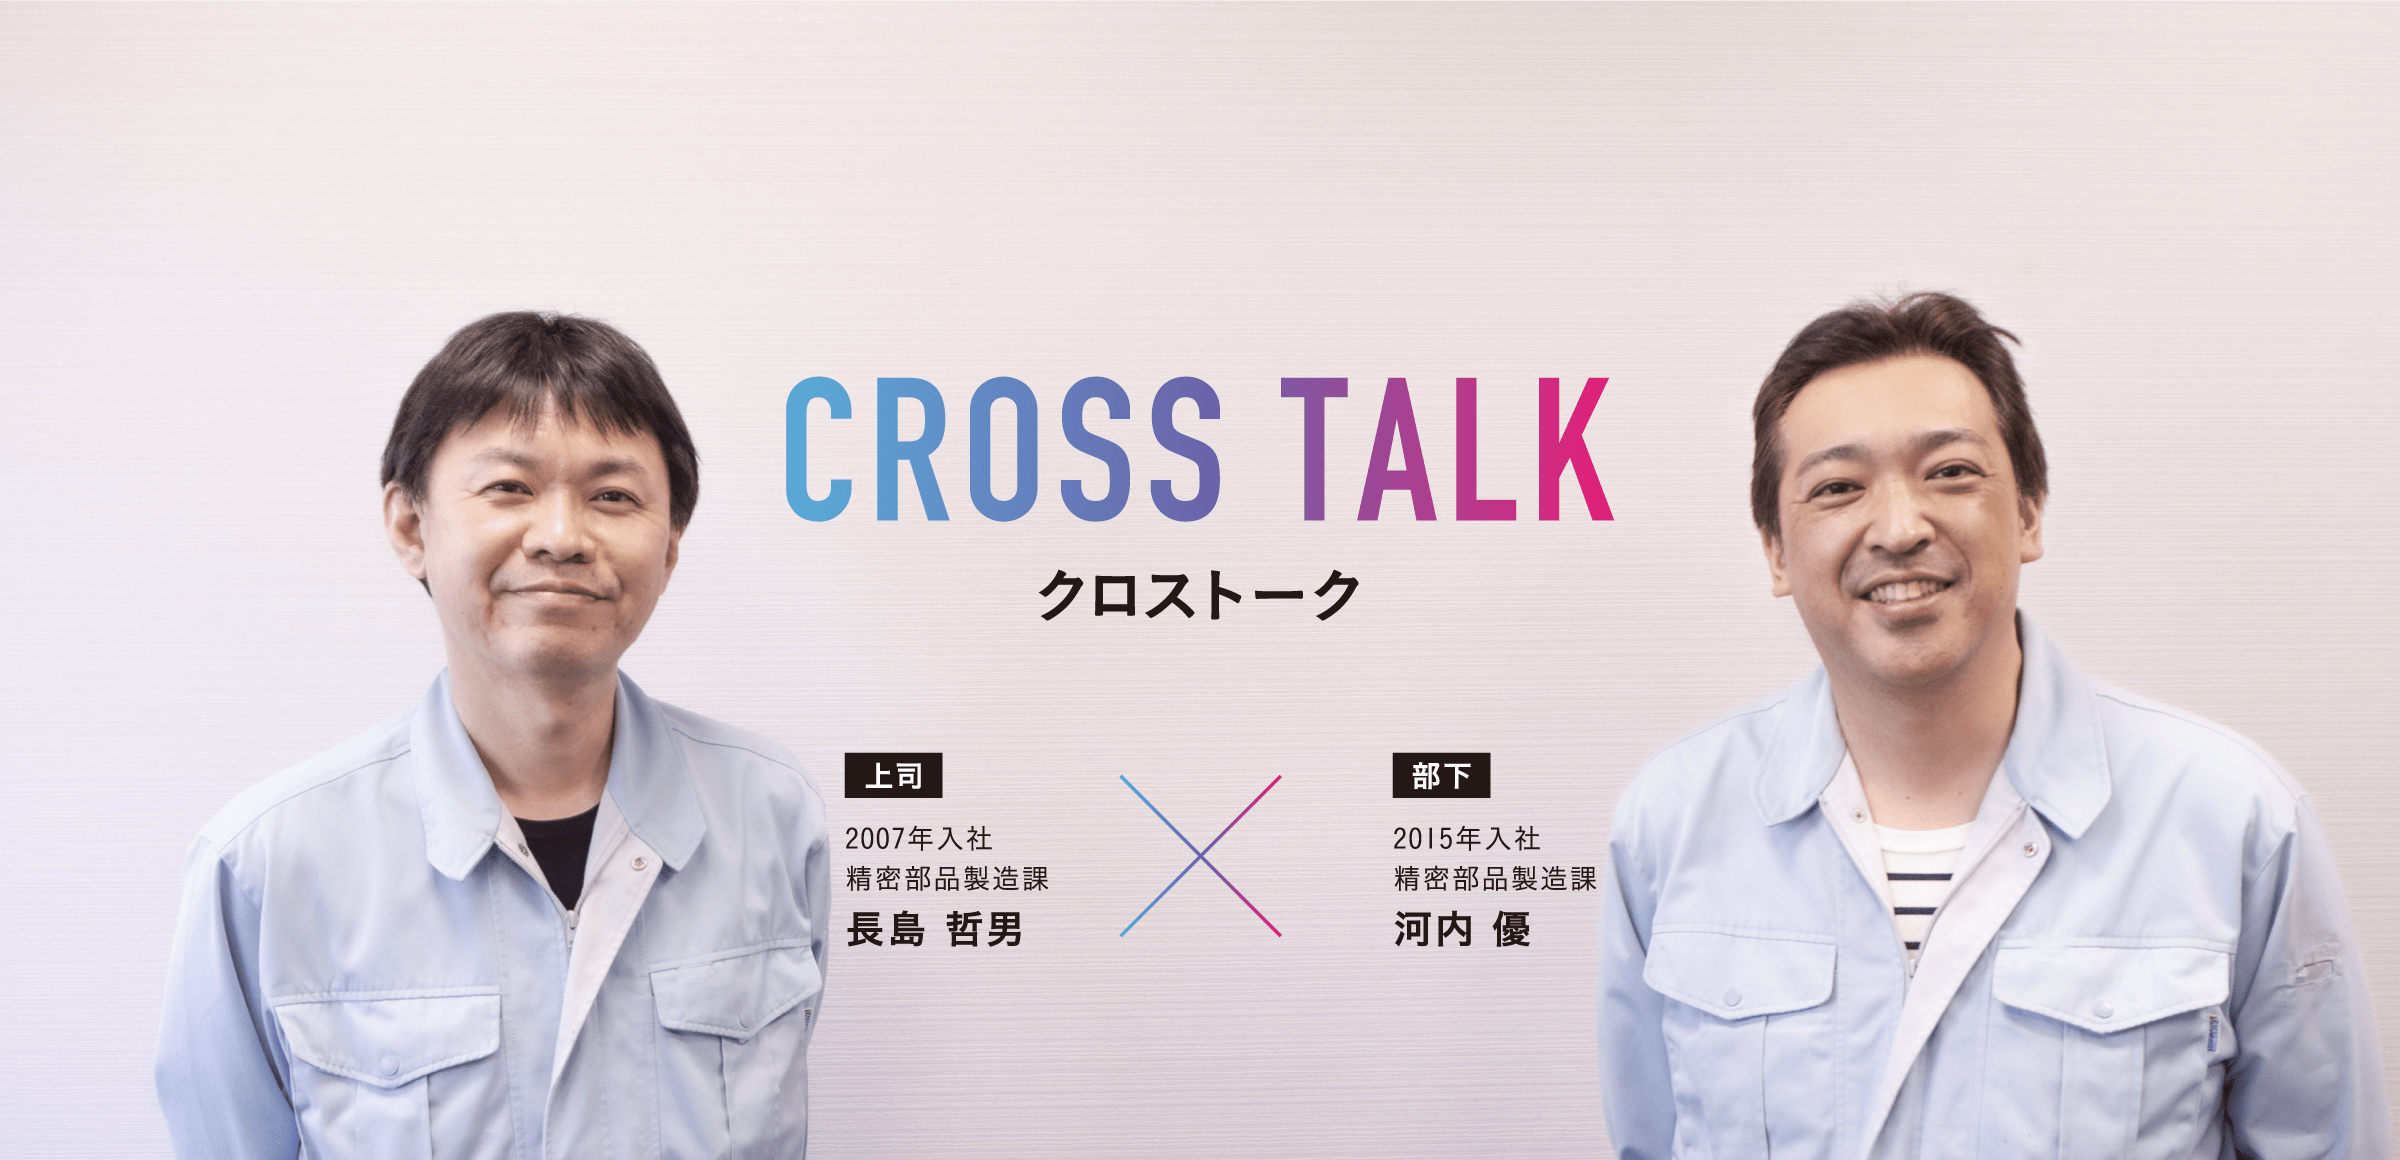 CROSS TALK|クロストーク